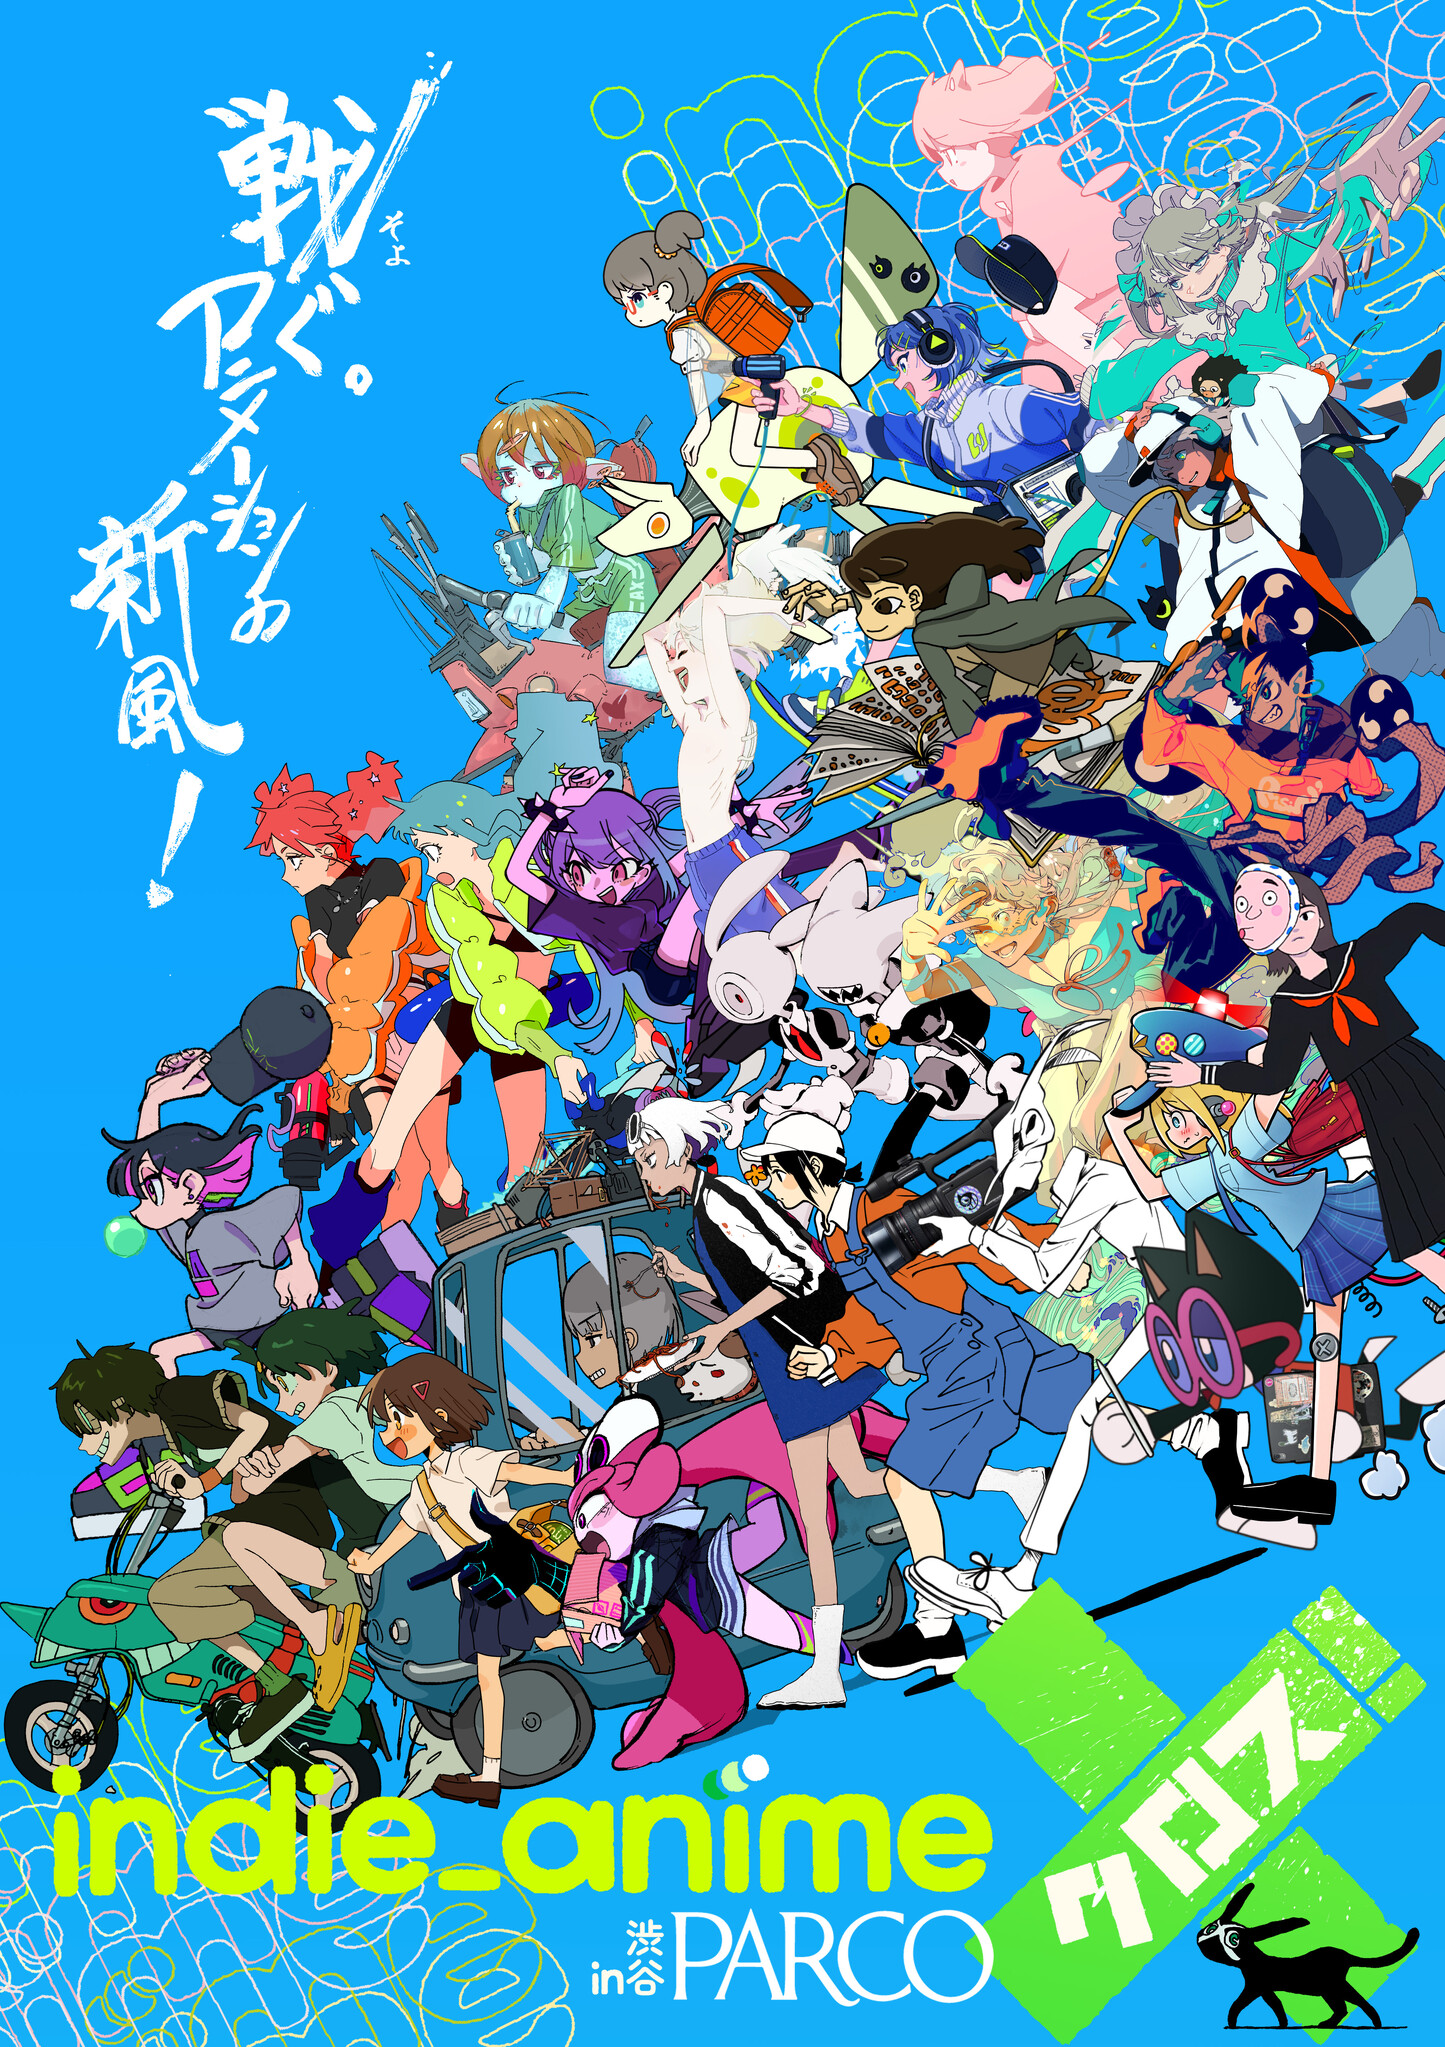 インディーアニメクロス 図録 はなぶし indie_anime 渋谷パルコ アート/エンタメ